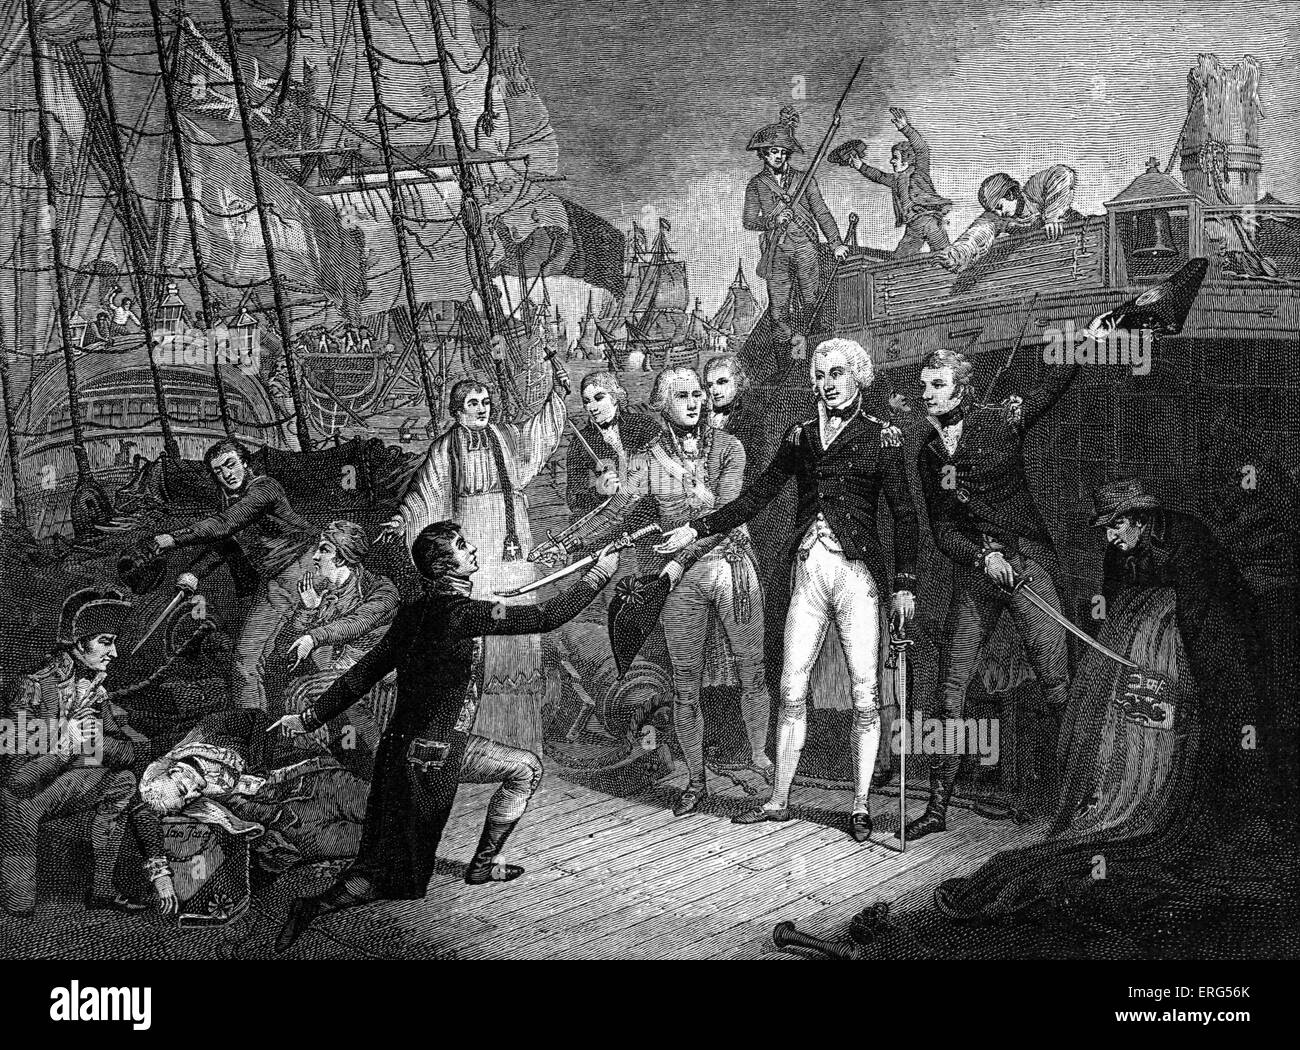 Lord Horatio Nelson, 1. Viscount Nelson (1758-1805) war ein britischer Admiral berühmt für seine Teilnahme an den napoleonischen Stockfoto